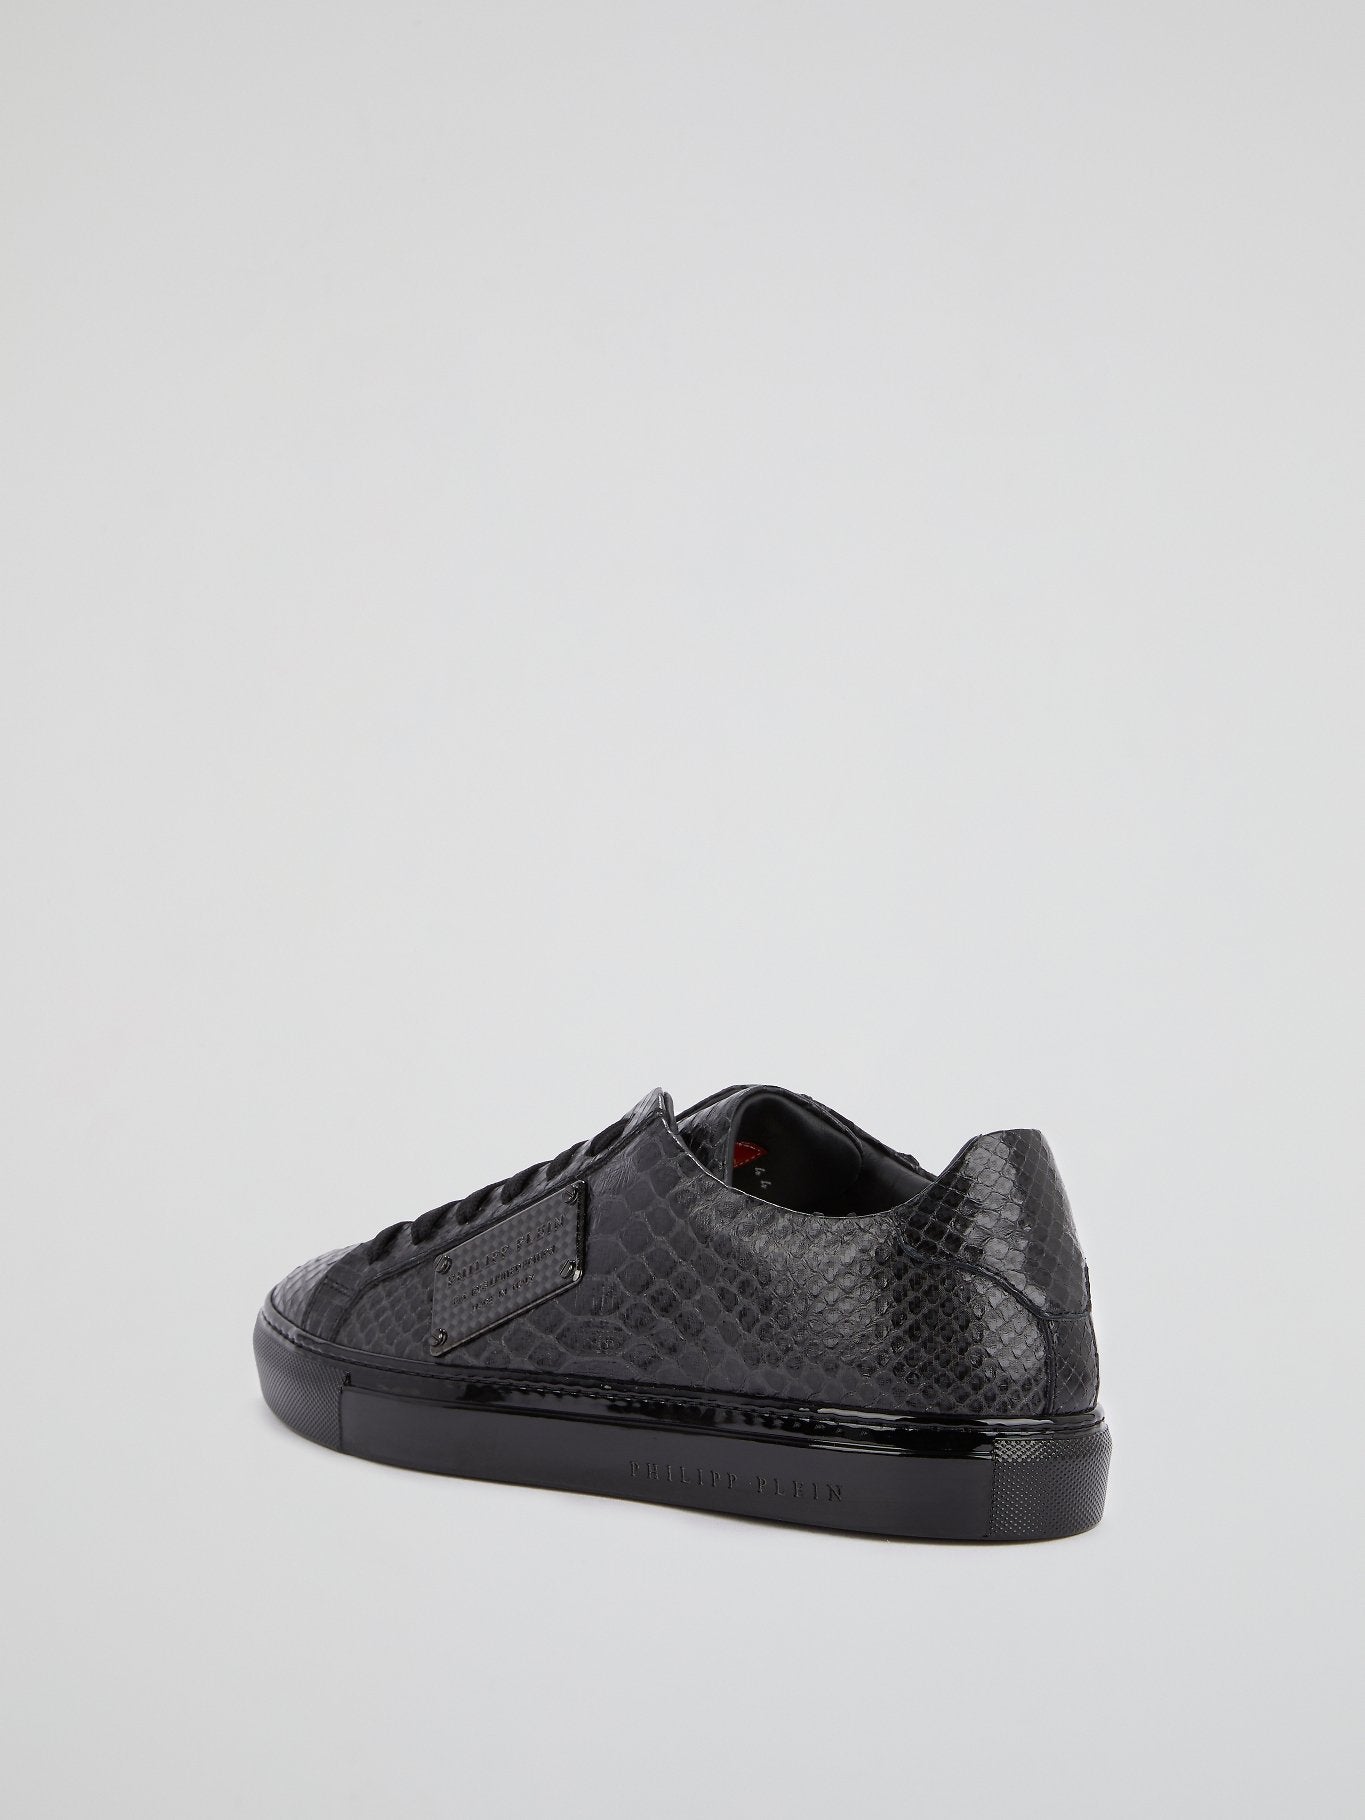 Black Low Top Reptile Sneakers